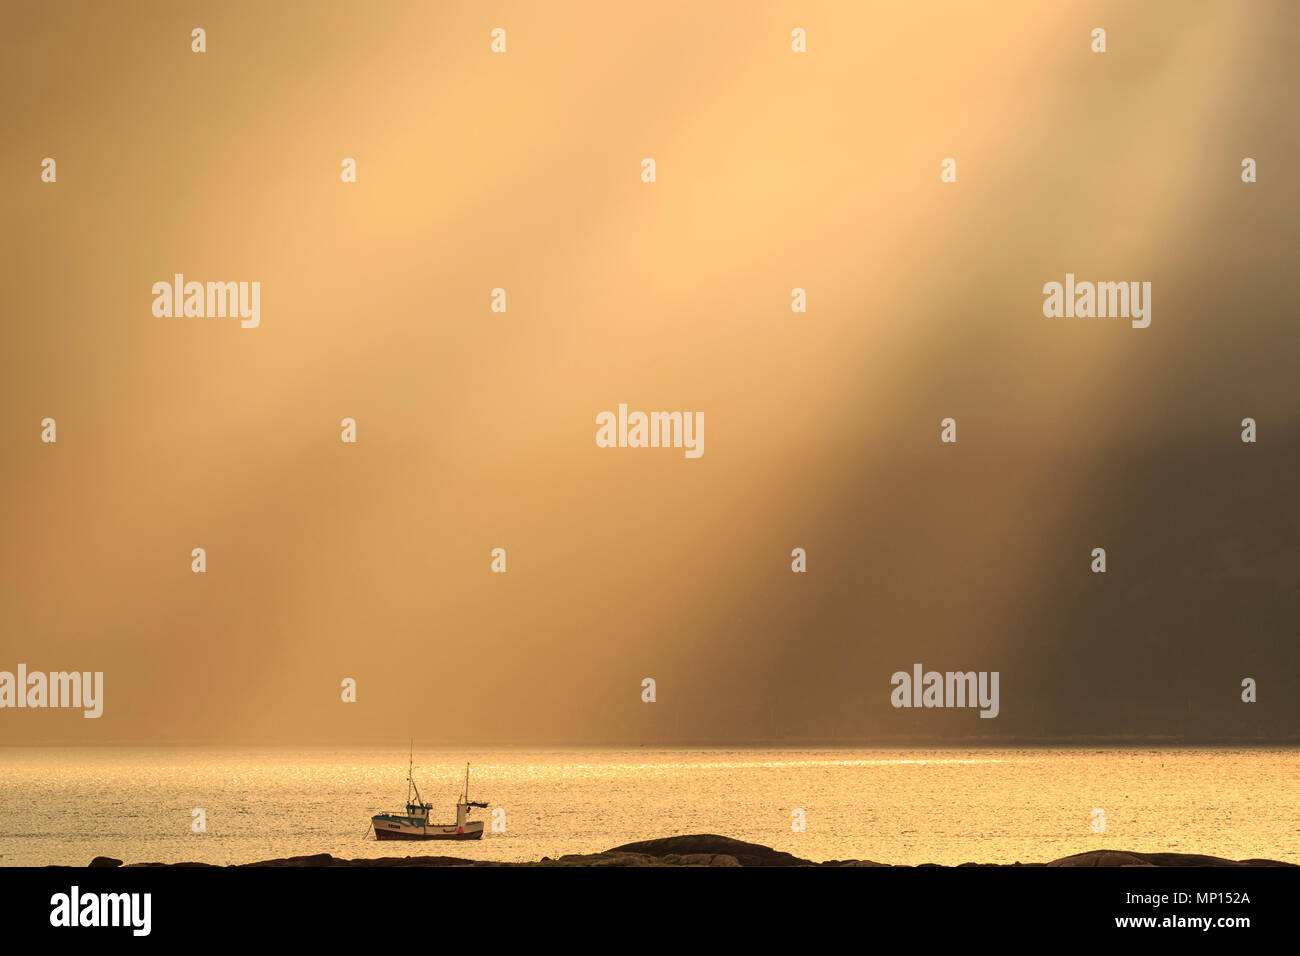 Golden rayos de sol sobre el Océano Atlántico durante la noche puesta de sol en verano; el agua es de color naranja y un barco distante pasa por Foto de stock